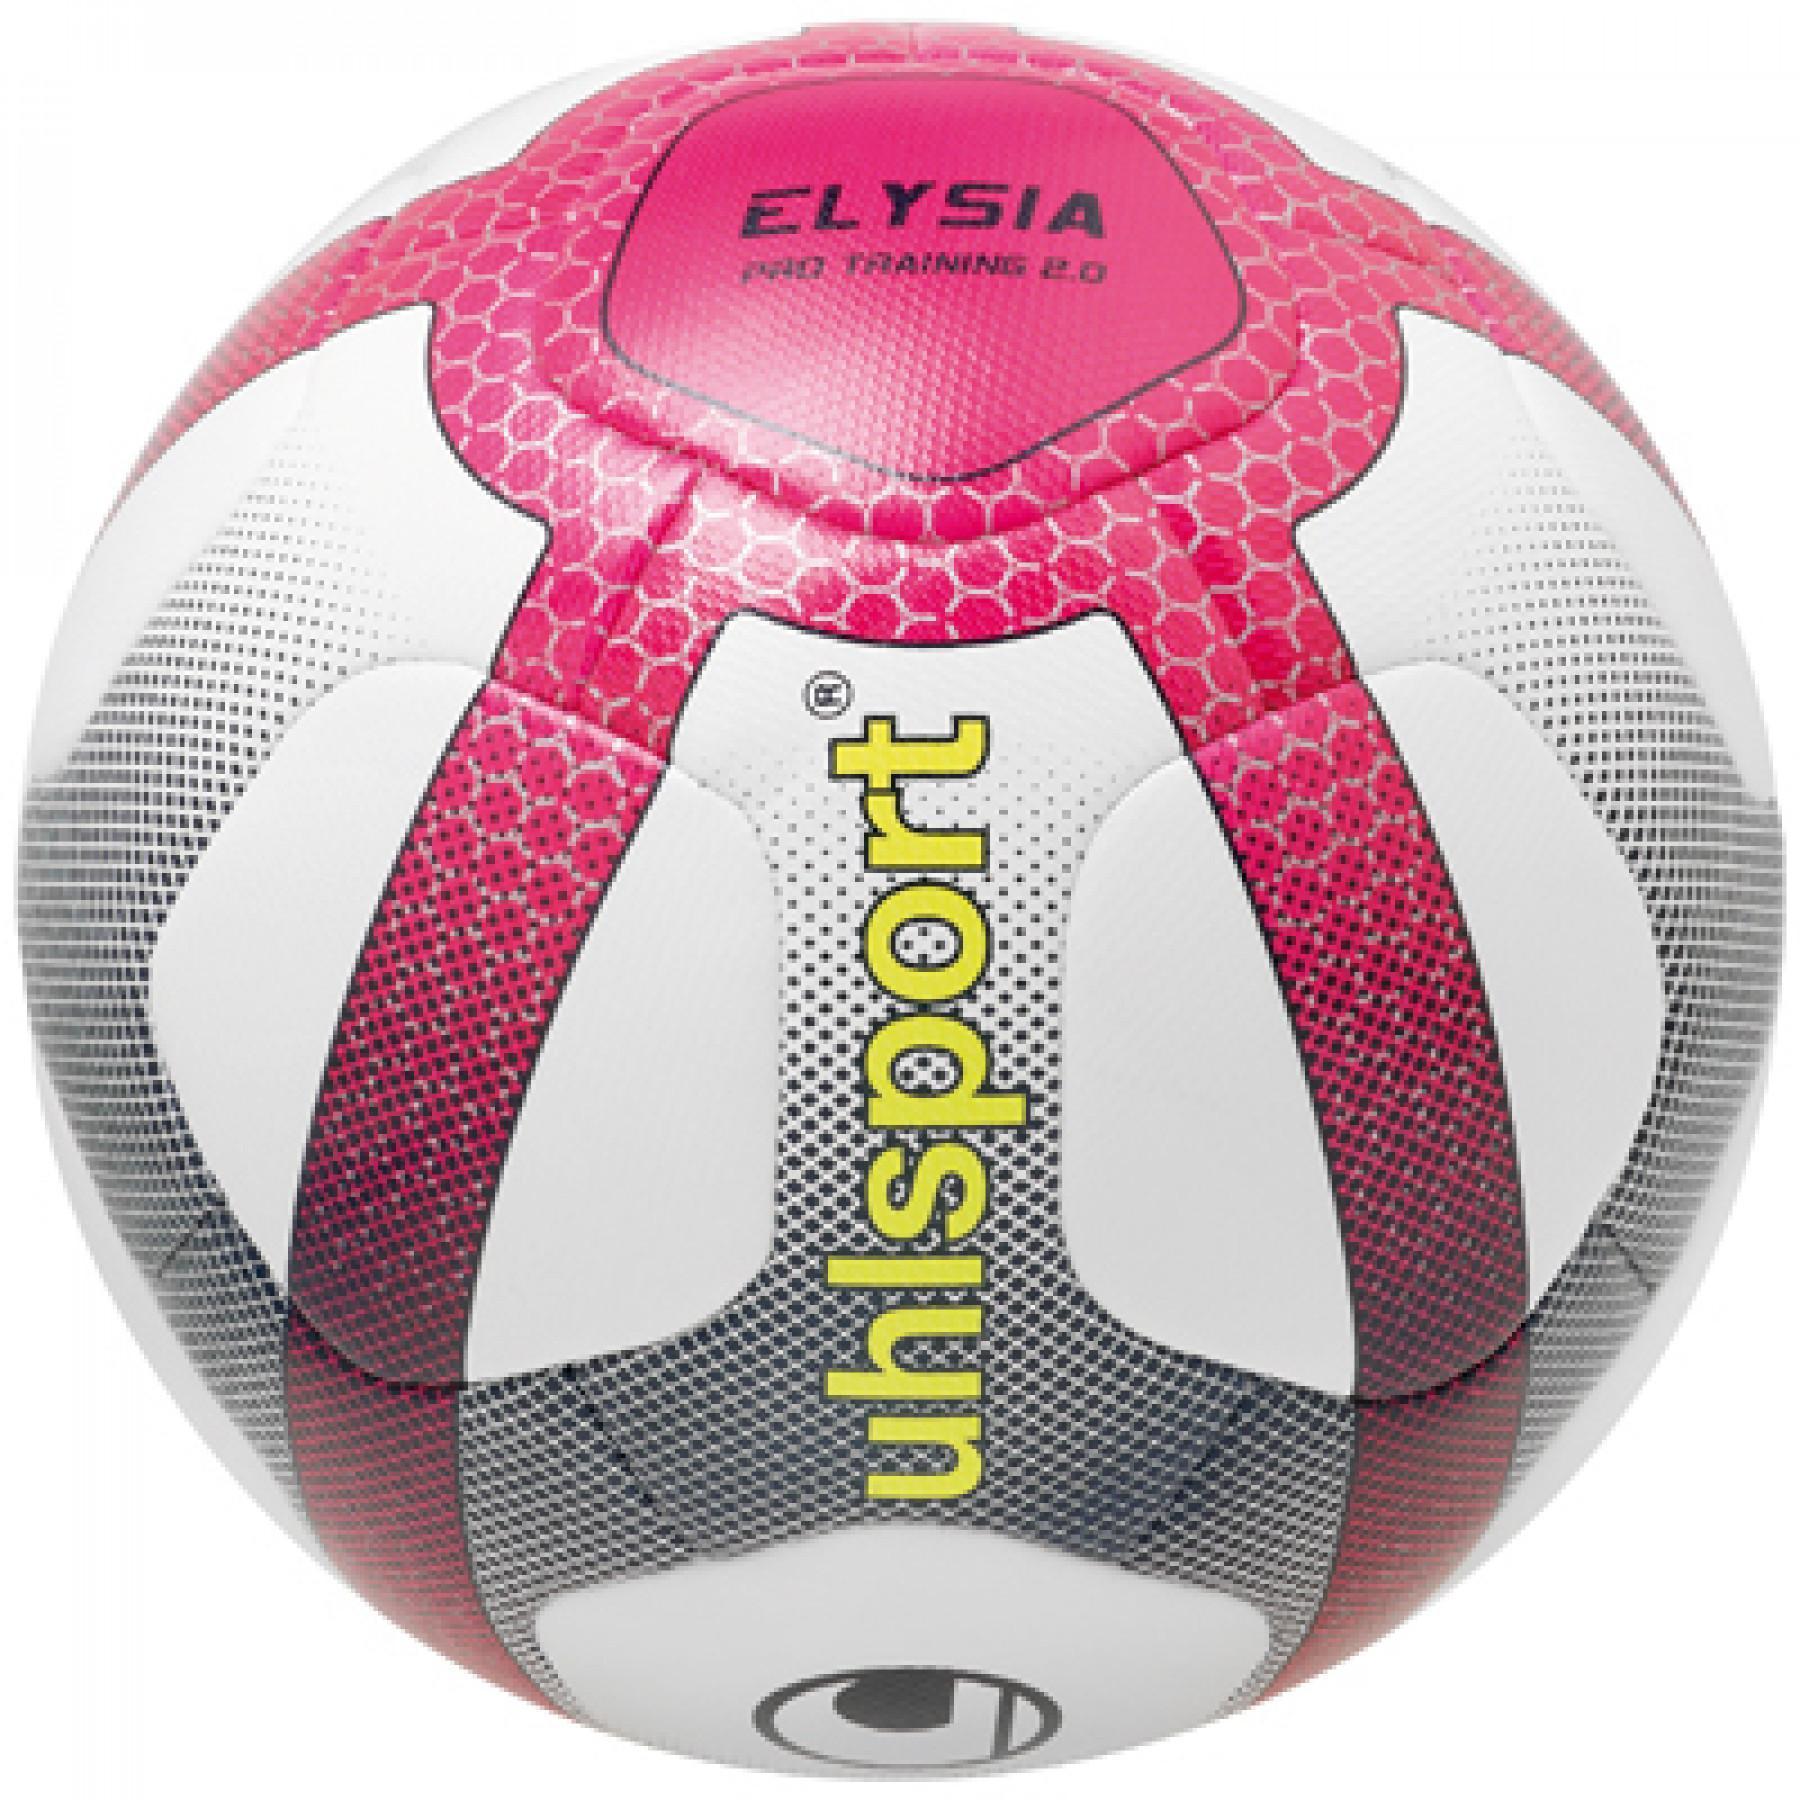  Ballon Uhlsport ELYSIA PRO TRAINING 2.0